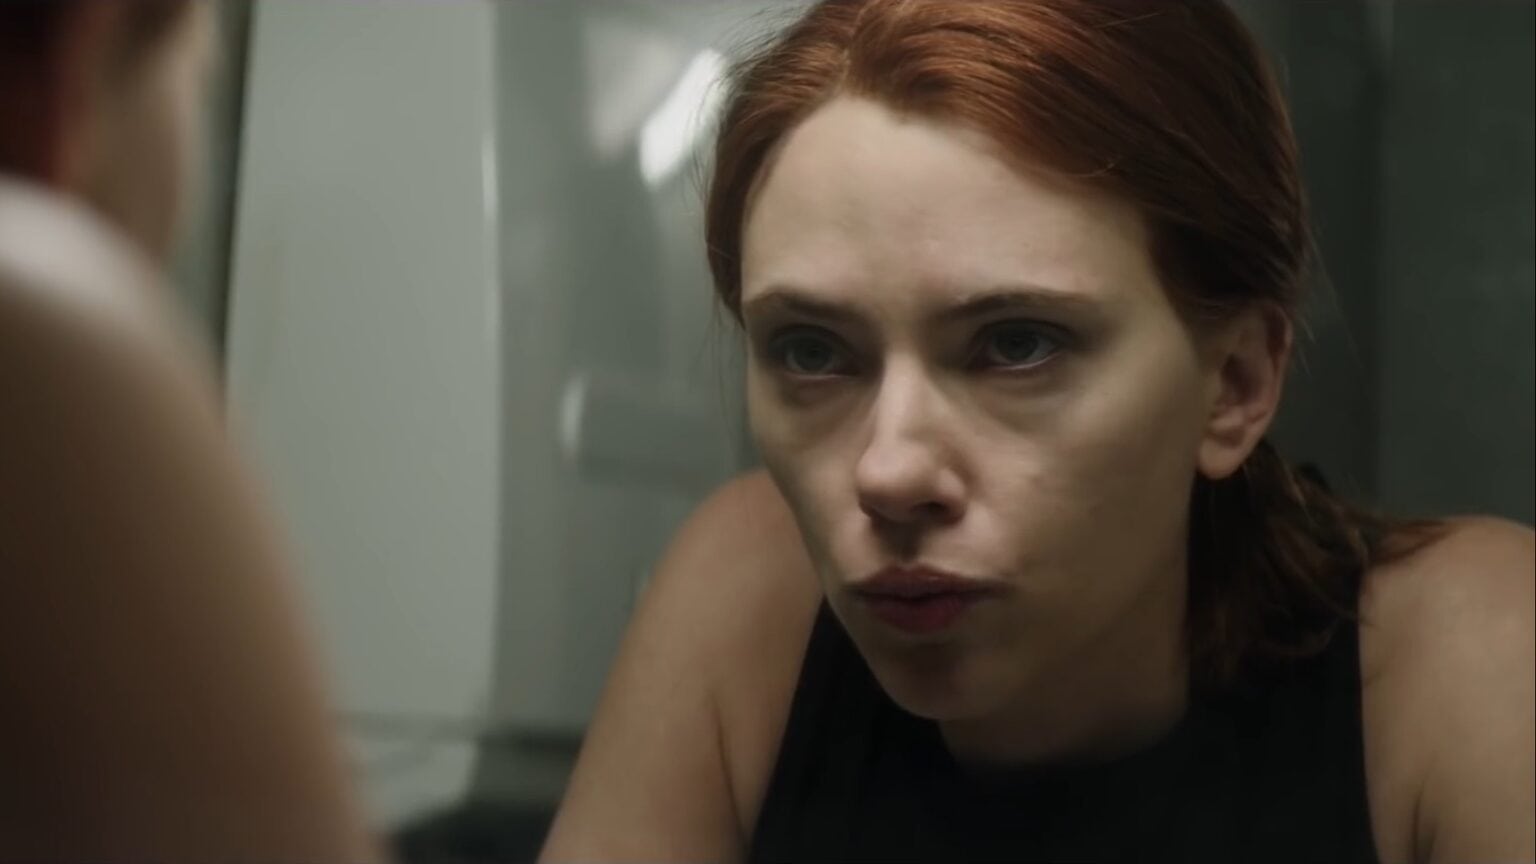 Scarlett Johansson will star in ‘Bride’ on Apple TV